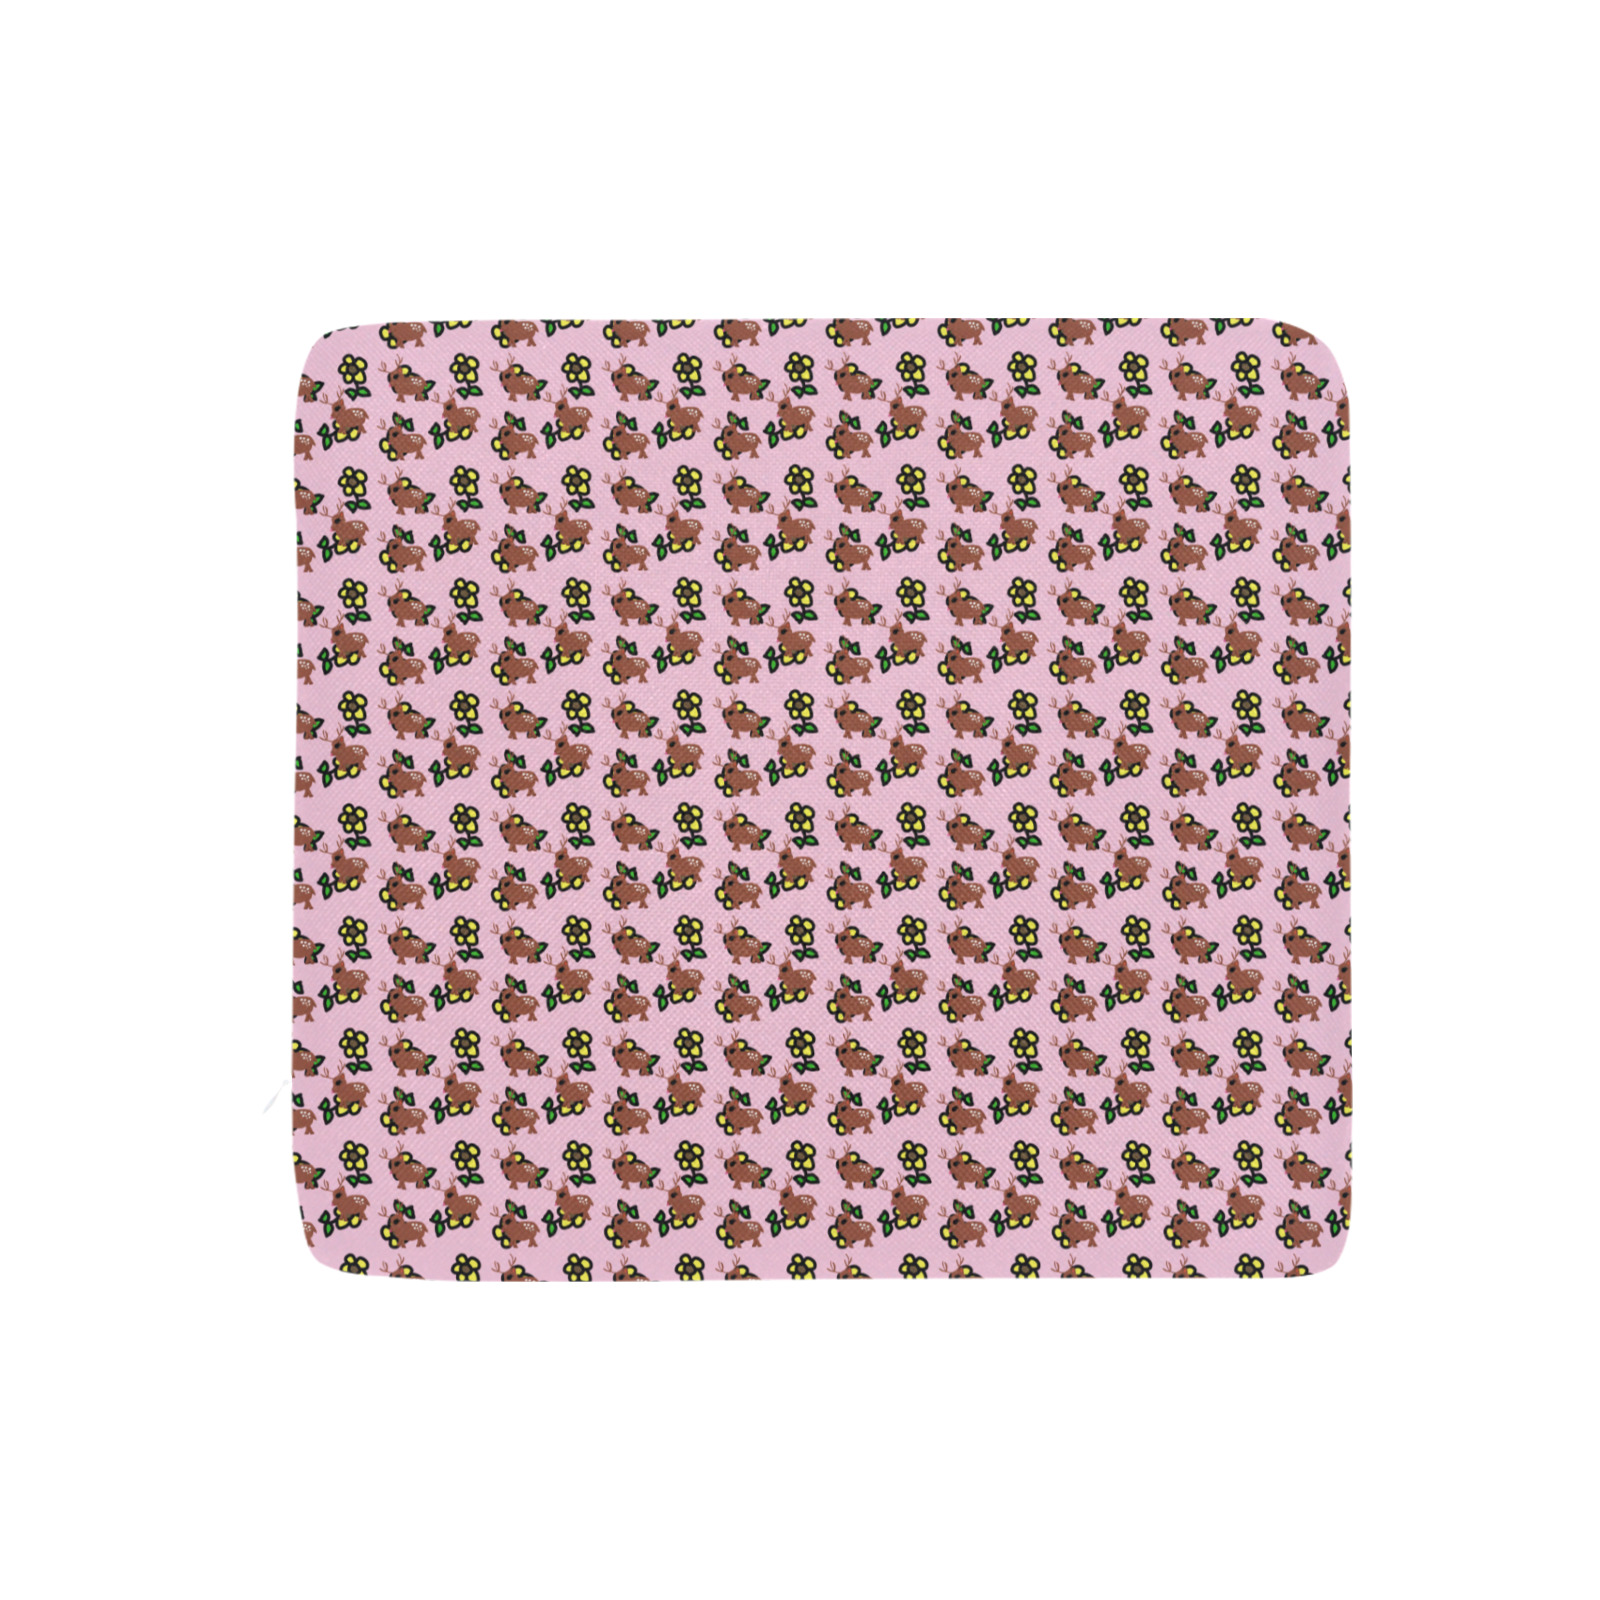 cute deer pattern pink Rectangular Seat Cushion